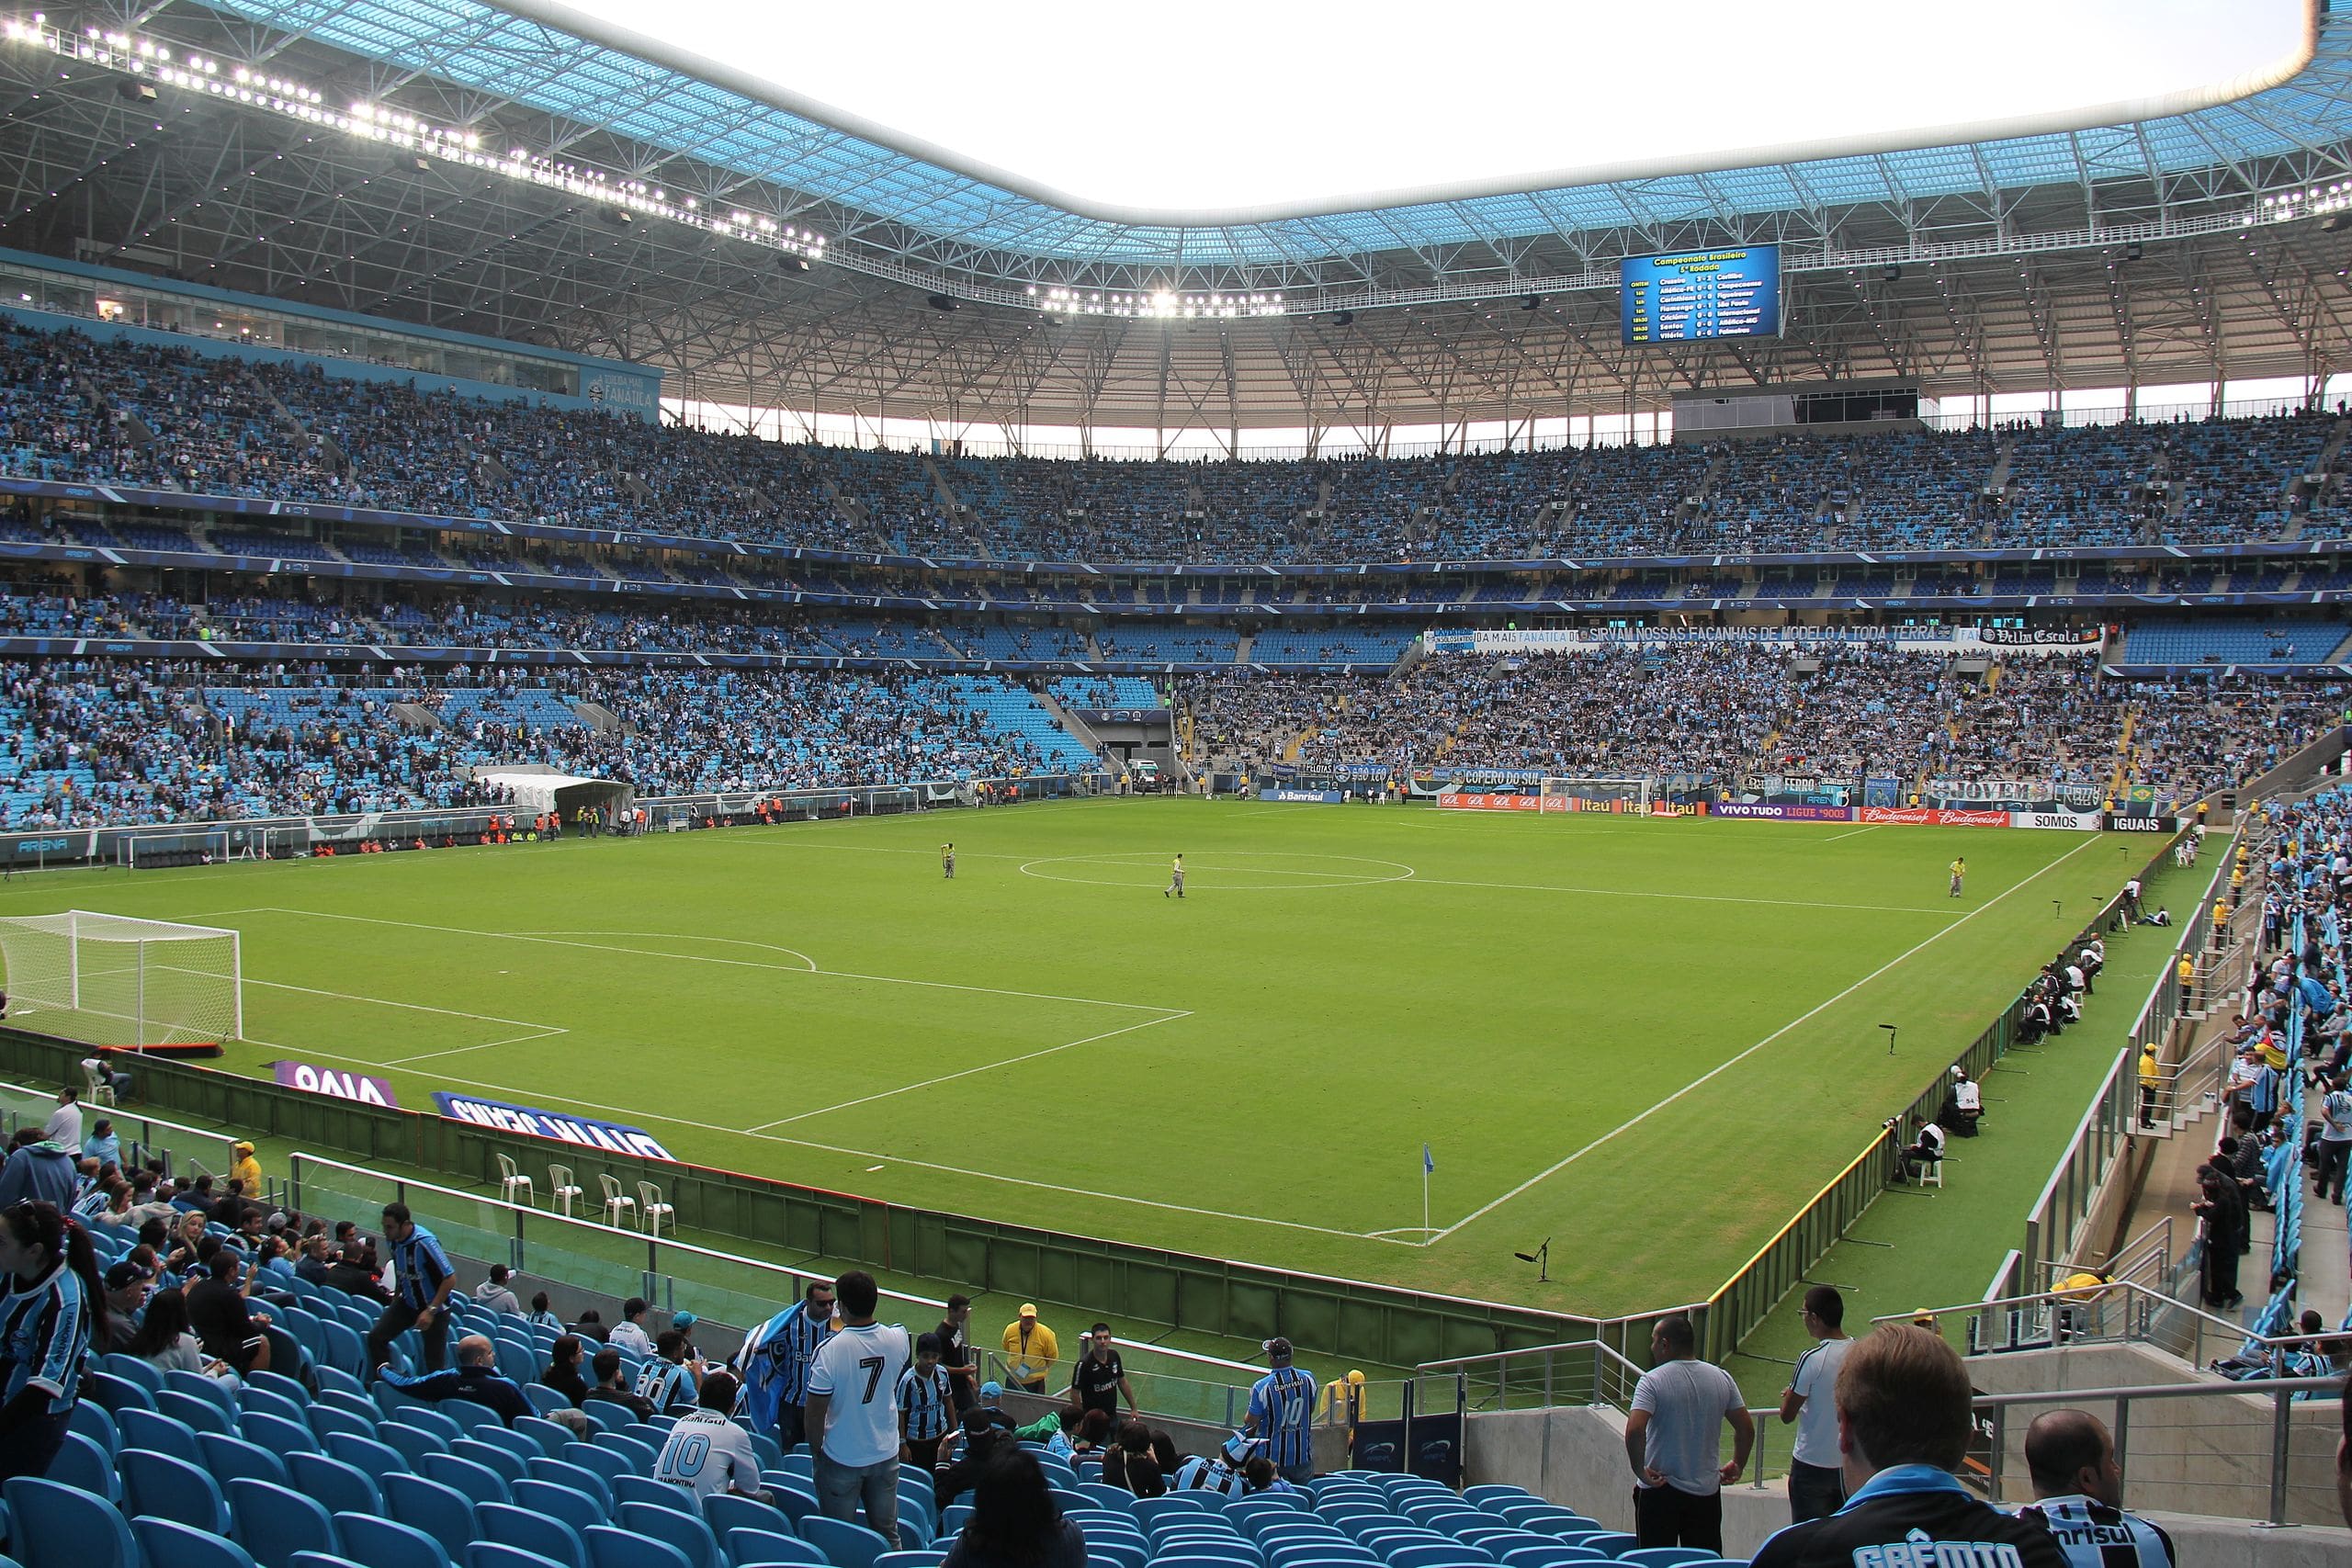  สนามแข่ง : Arena do Grêmio